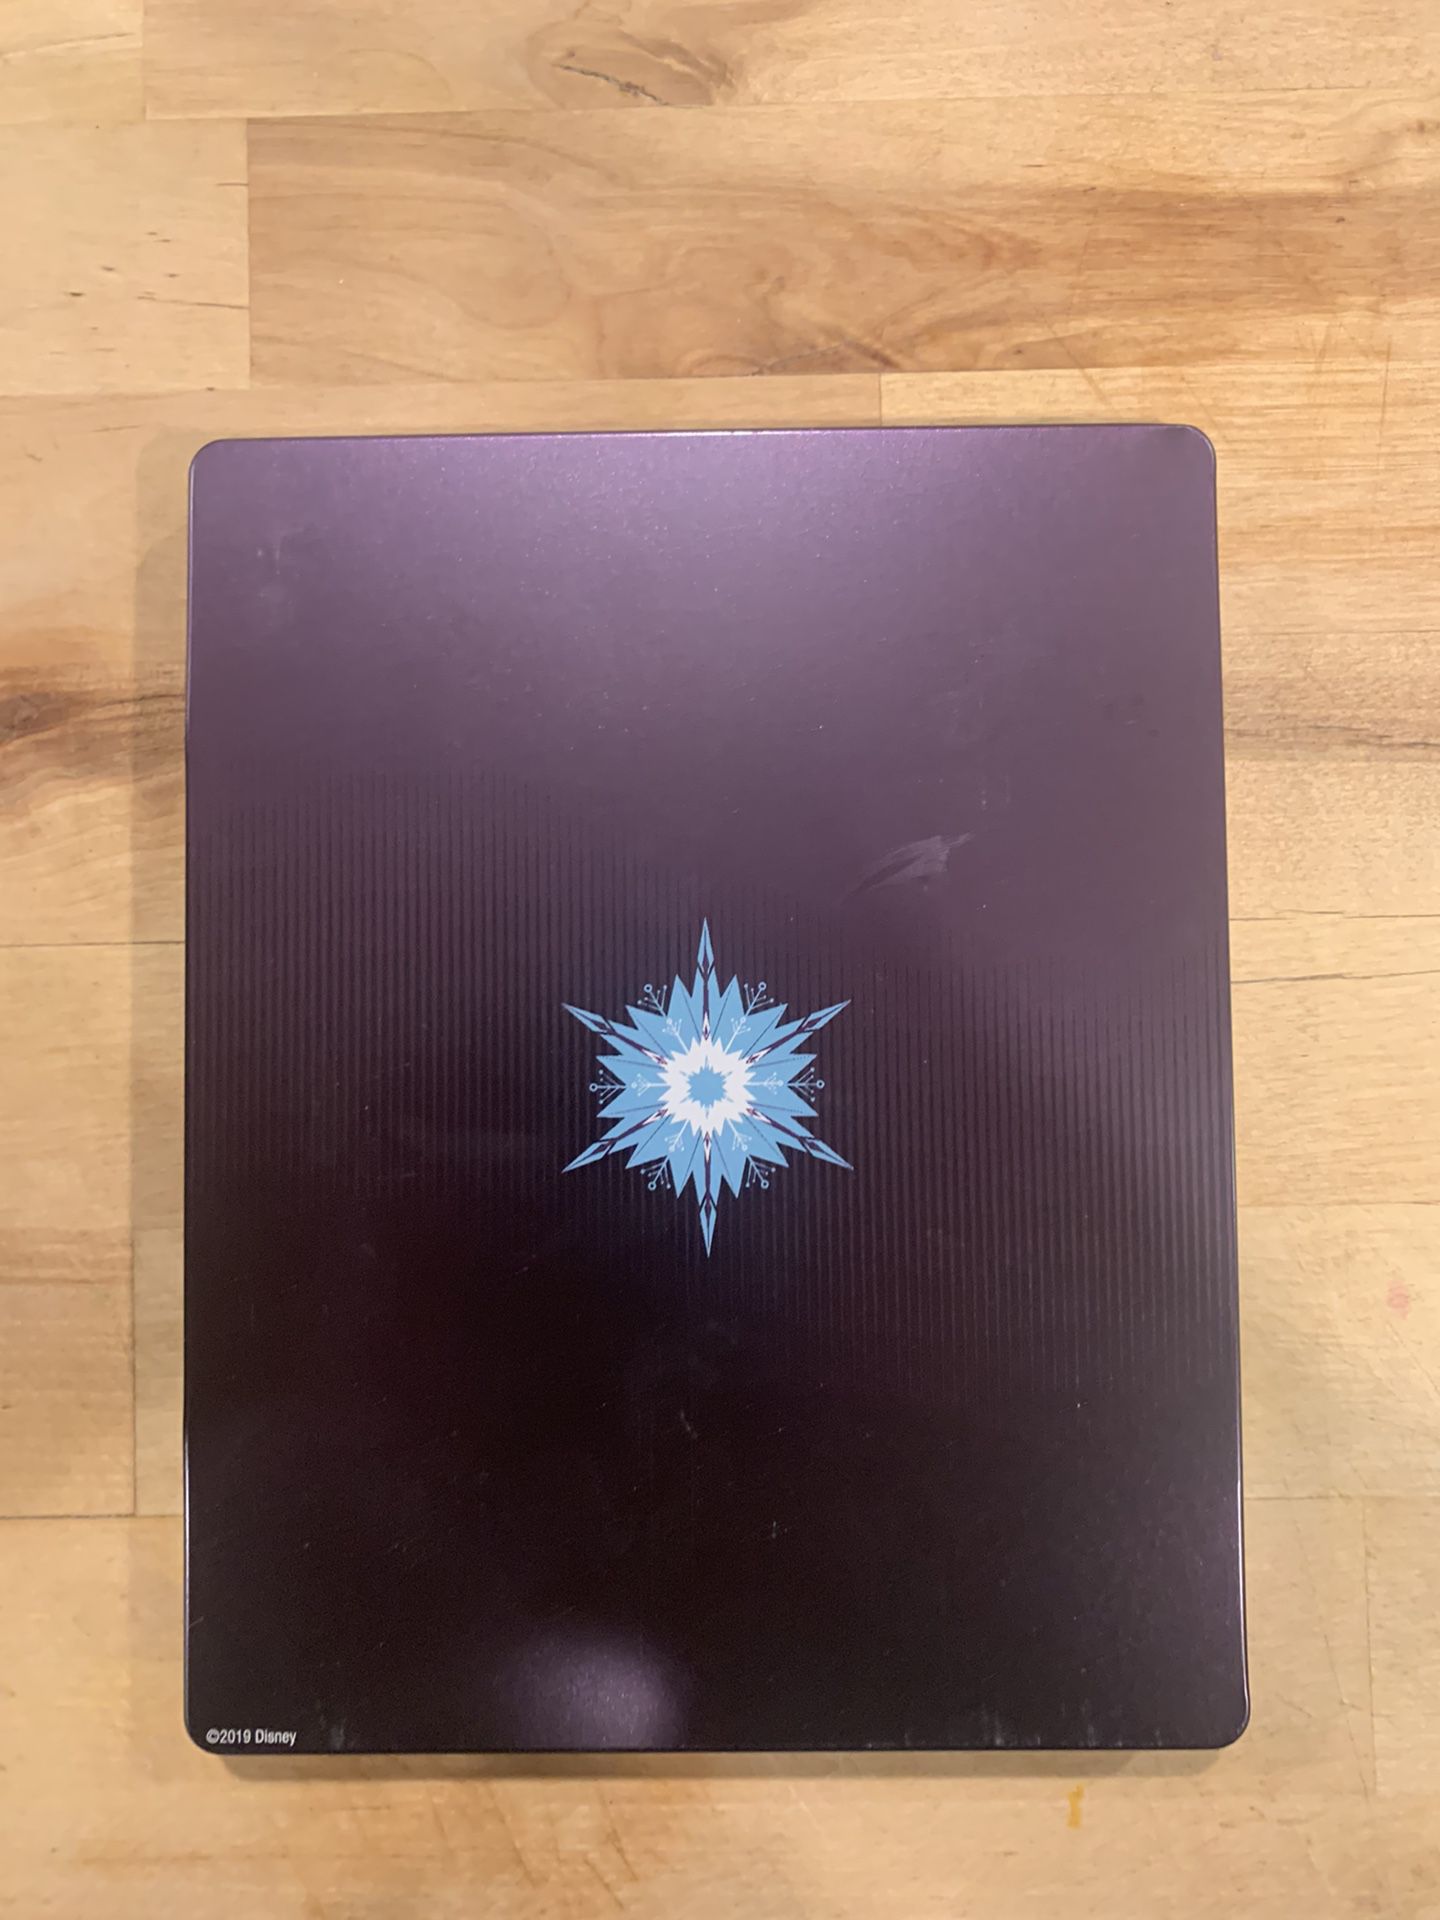 Frozen Special Edition Mondo blu ray Steelbook